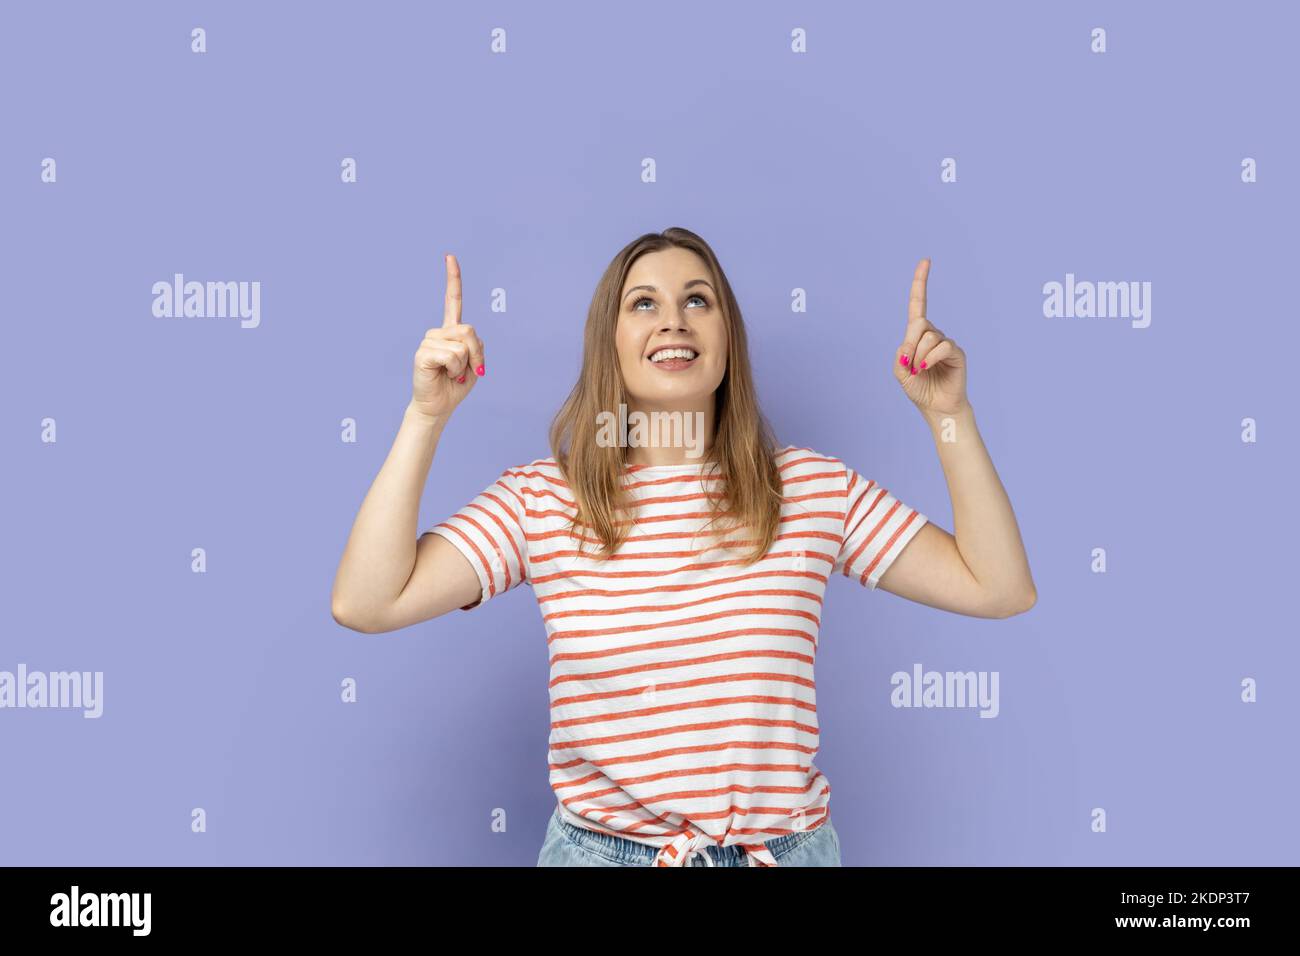 Guardate là, area pubblicitaria. Ritratto di una donna bionda sorridente che indossa una T-shirt a righe che guarda stupita e che indica uno spazio vuoto per la promozione. Studio al coperto isolato su sfondo viola. Foto Stock